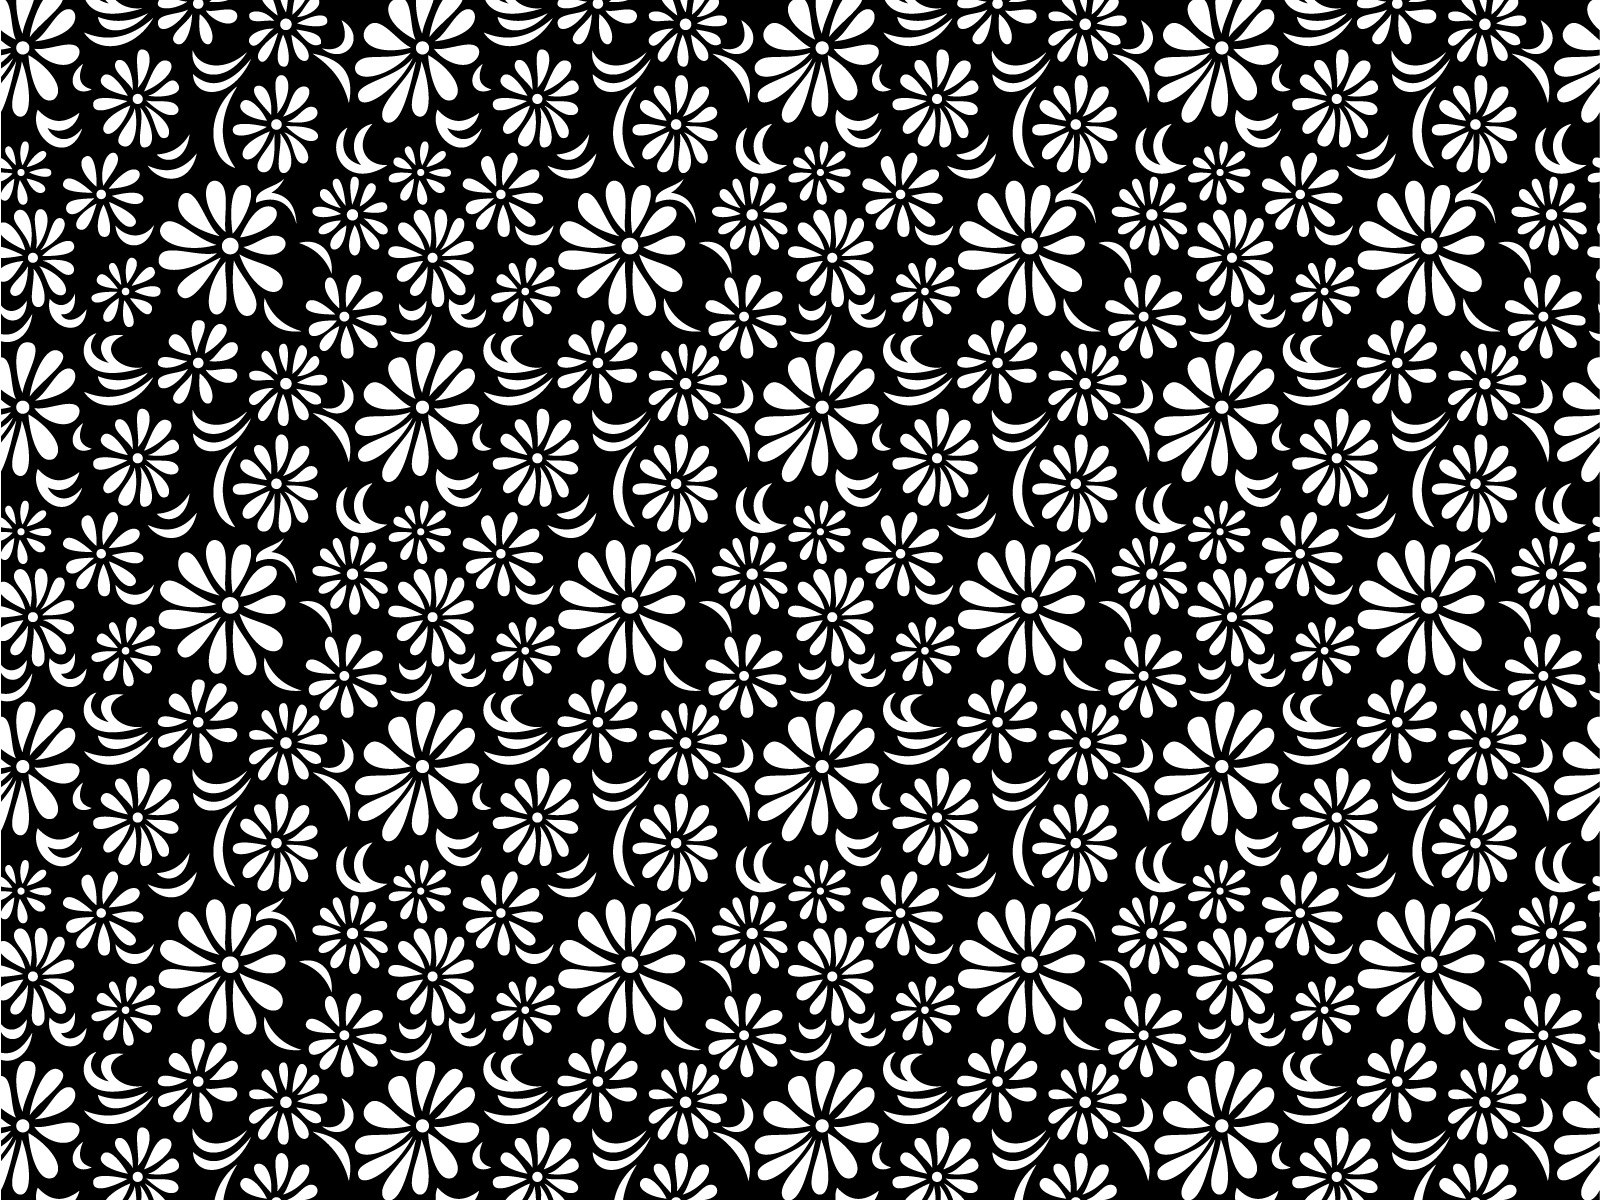 schwarz weiß blumentapete,muster,design,muster,symmetrie,einfarbig